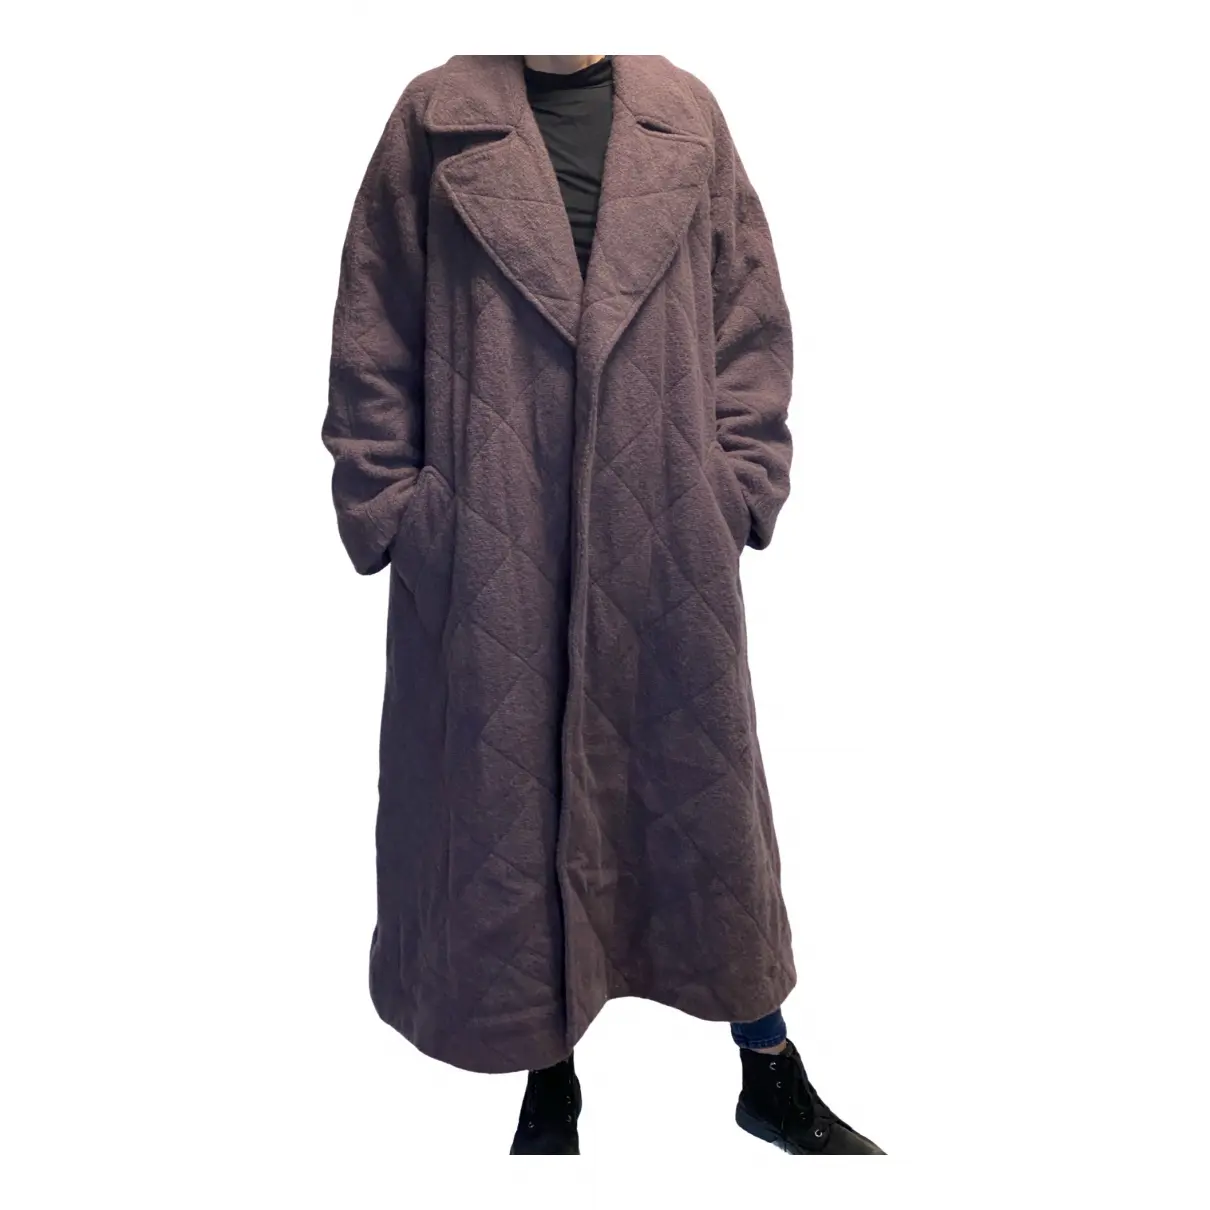 Buy Belstaff Wool coat online